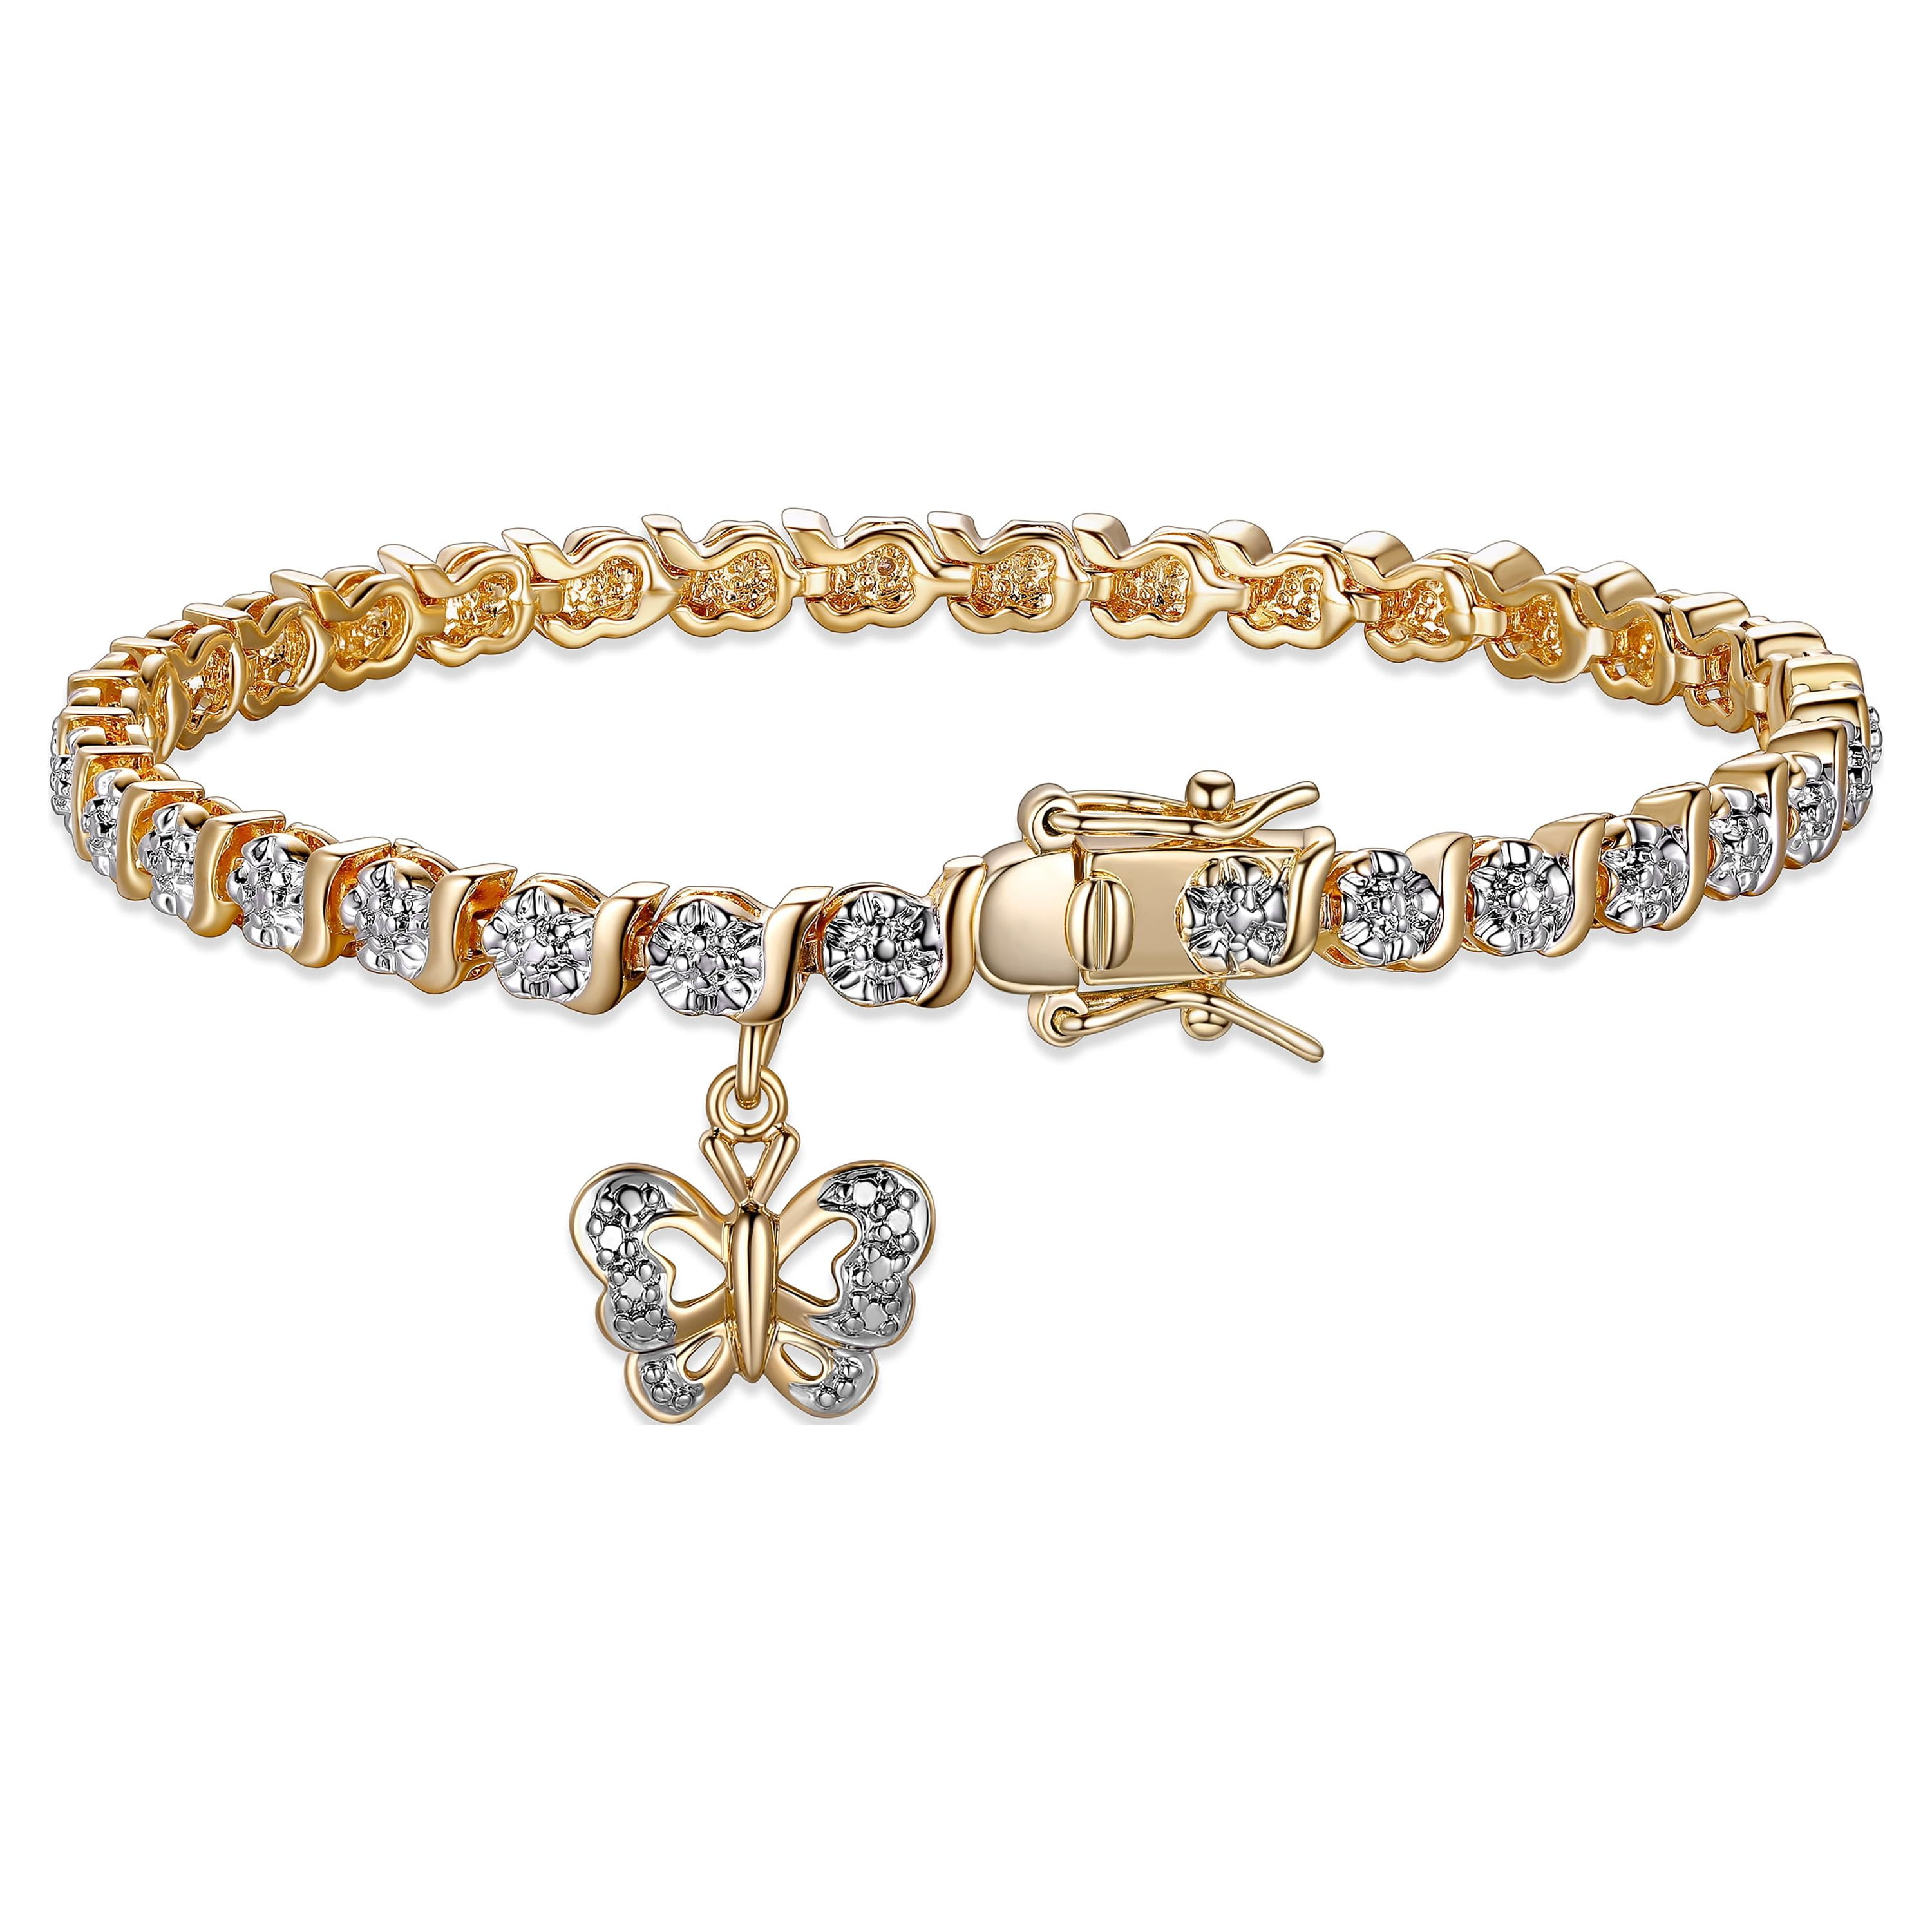 Gemstone Bracelets in Gemstone Jewelry - Walmart.com